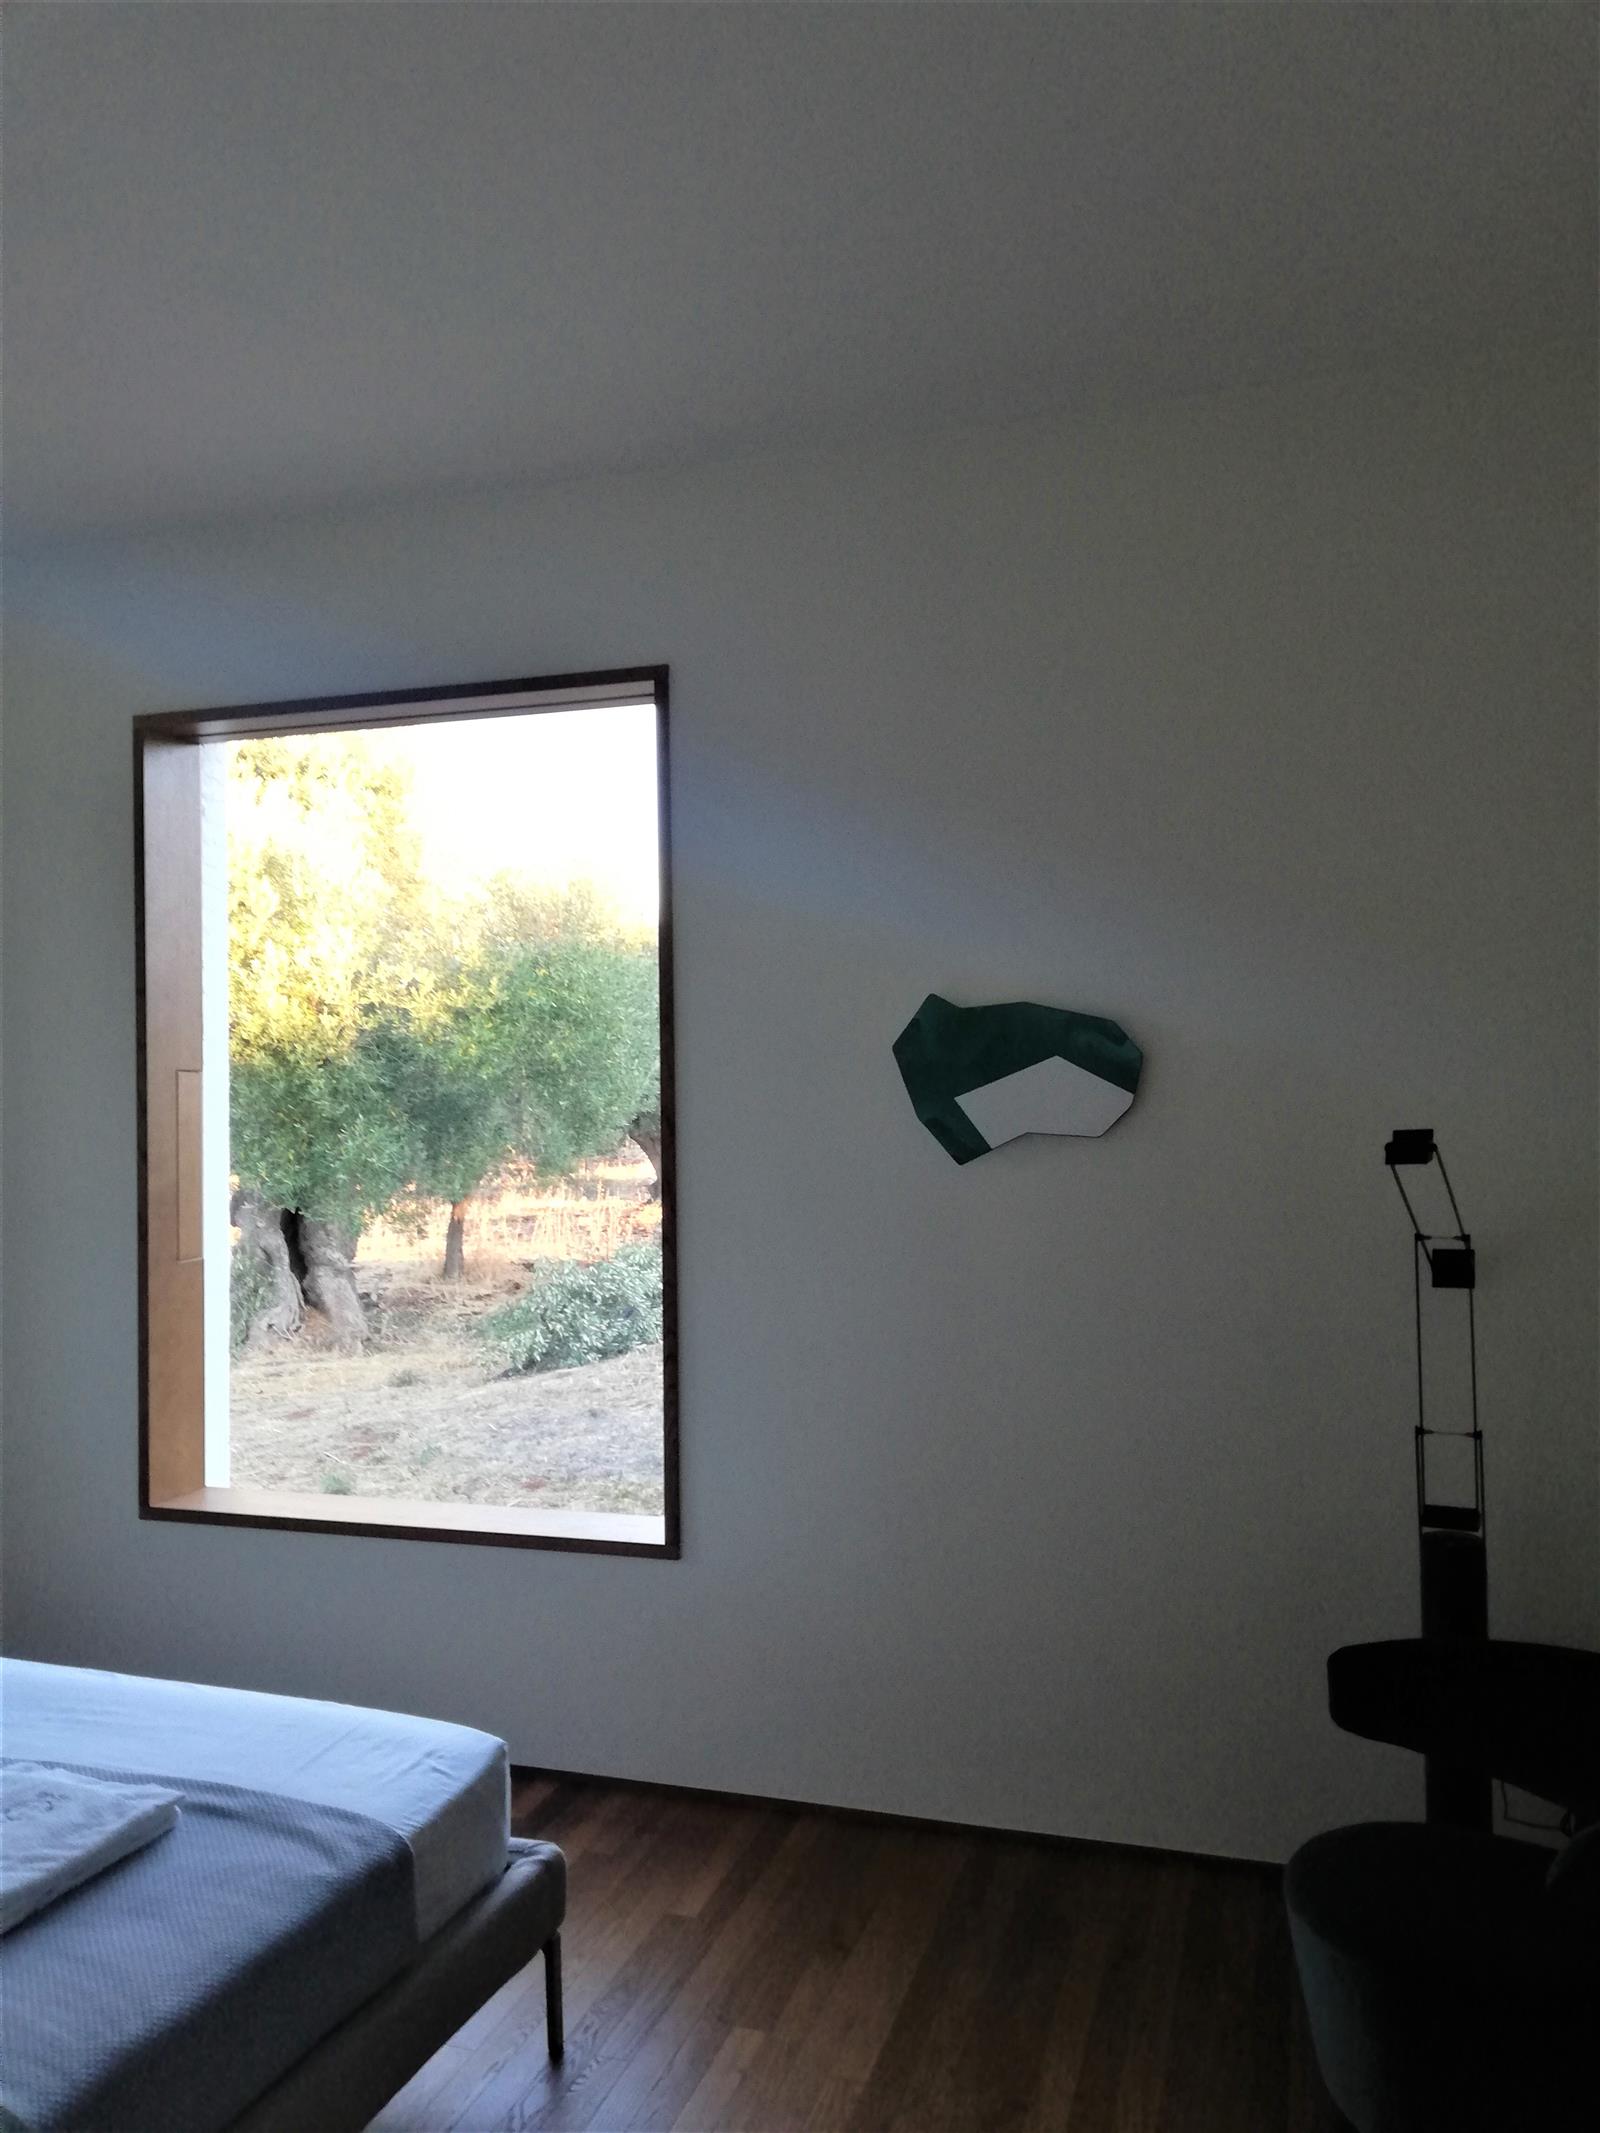 Terre emerse e Blu - Itacahomes e il team di progettisti Hus presentano l'installazione di Giorgio Vicentini nella Villa dell'Eclissi, Carovigno (Br) | 2021 | Site specific  | 